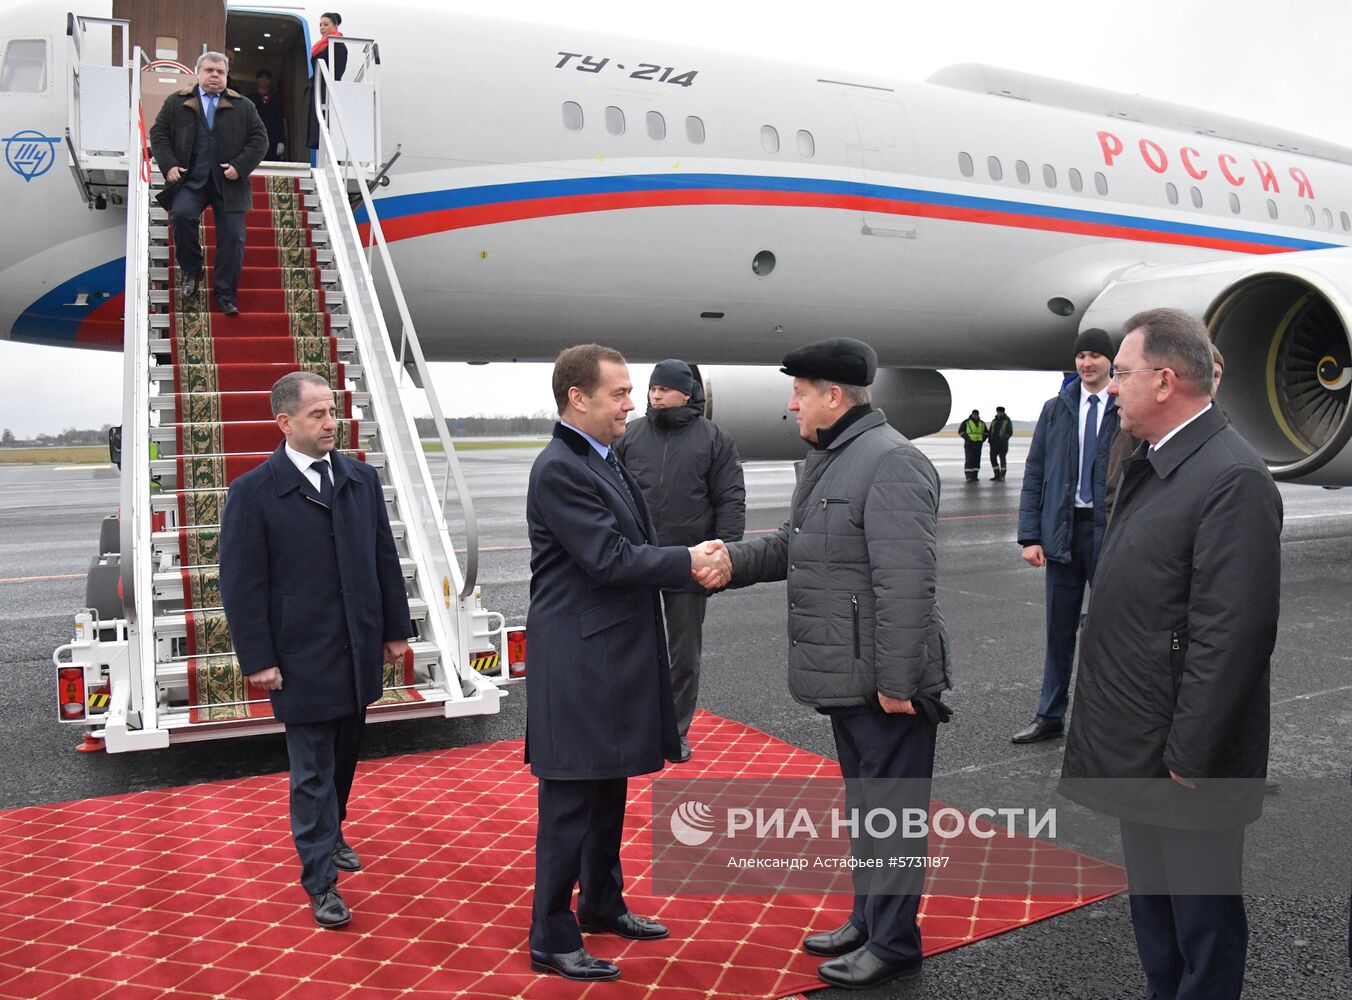 Премьер-министр РФ Д. Медведев прибыл в Брест для участия в заседании Совета министров Союзного государства России и Белоруссии 